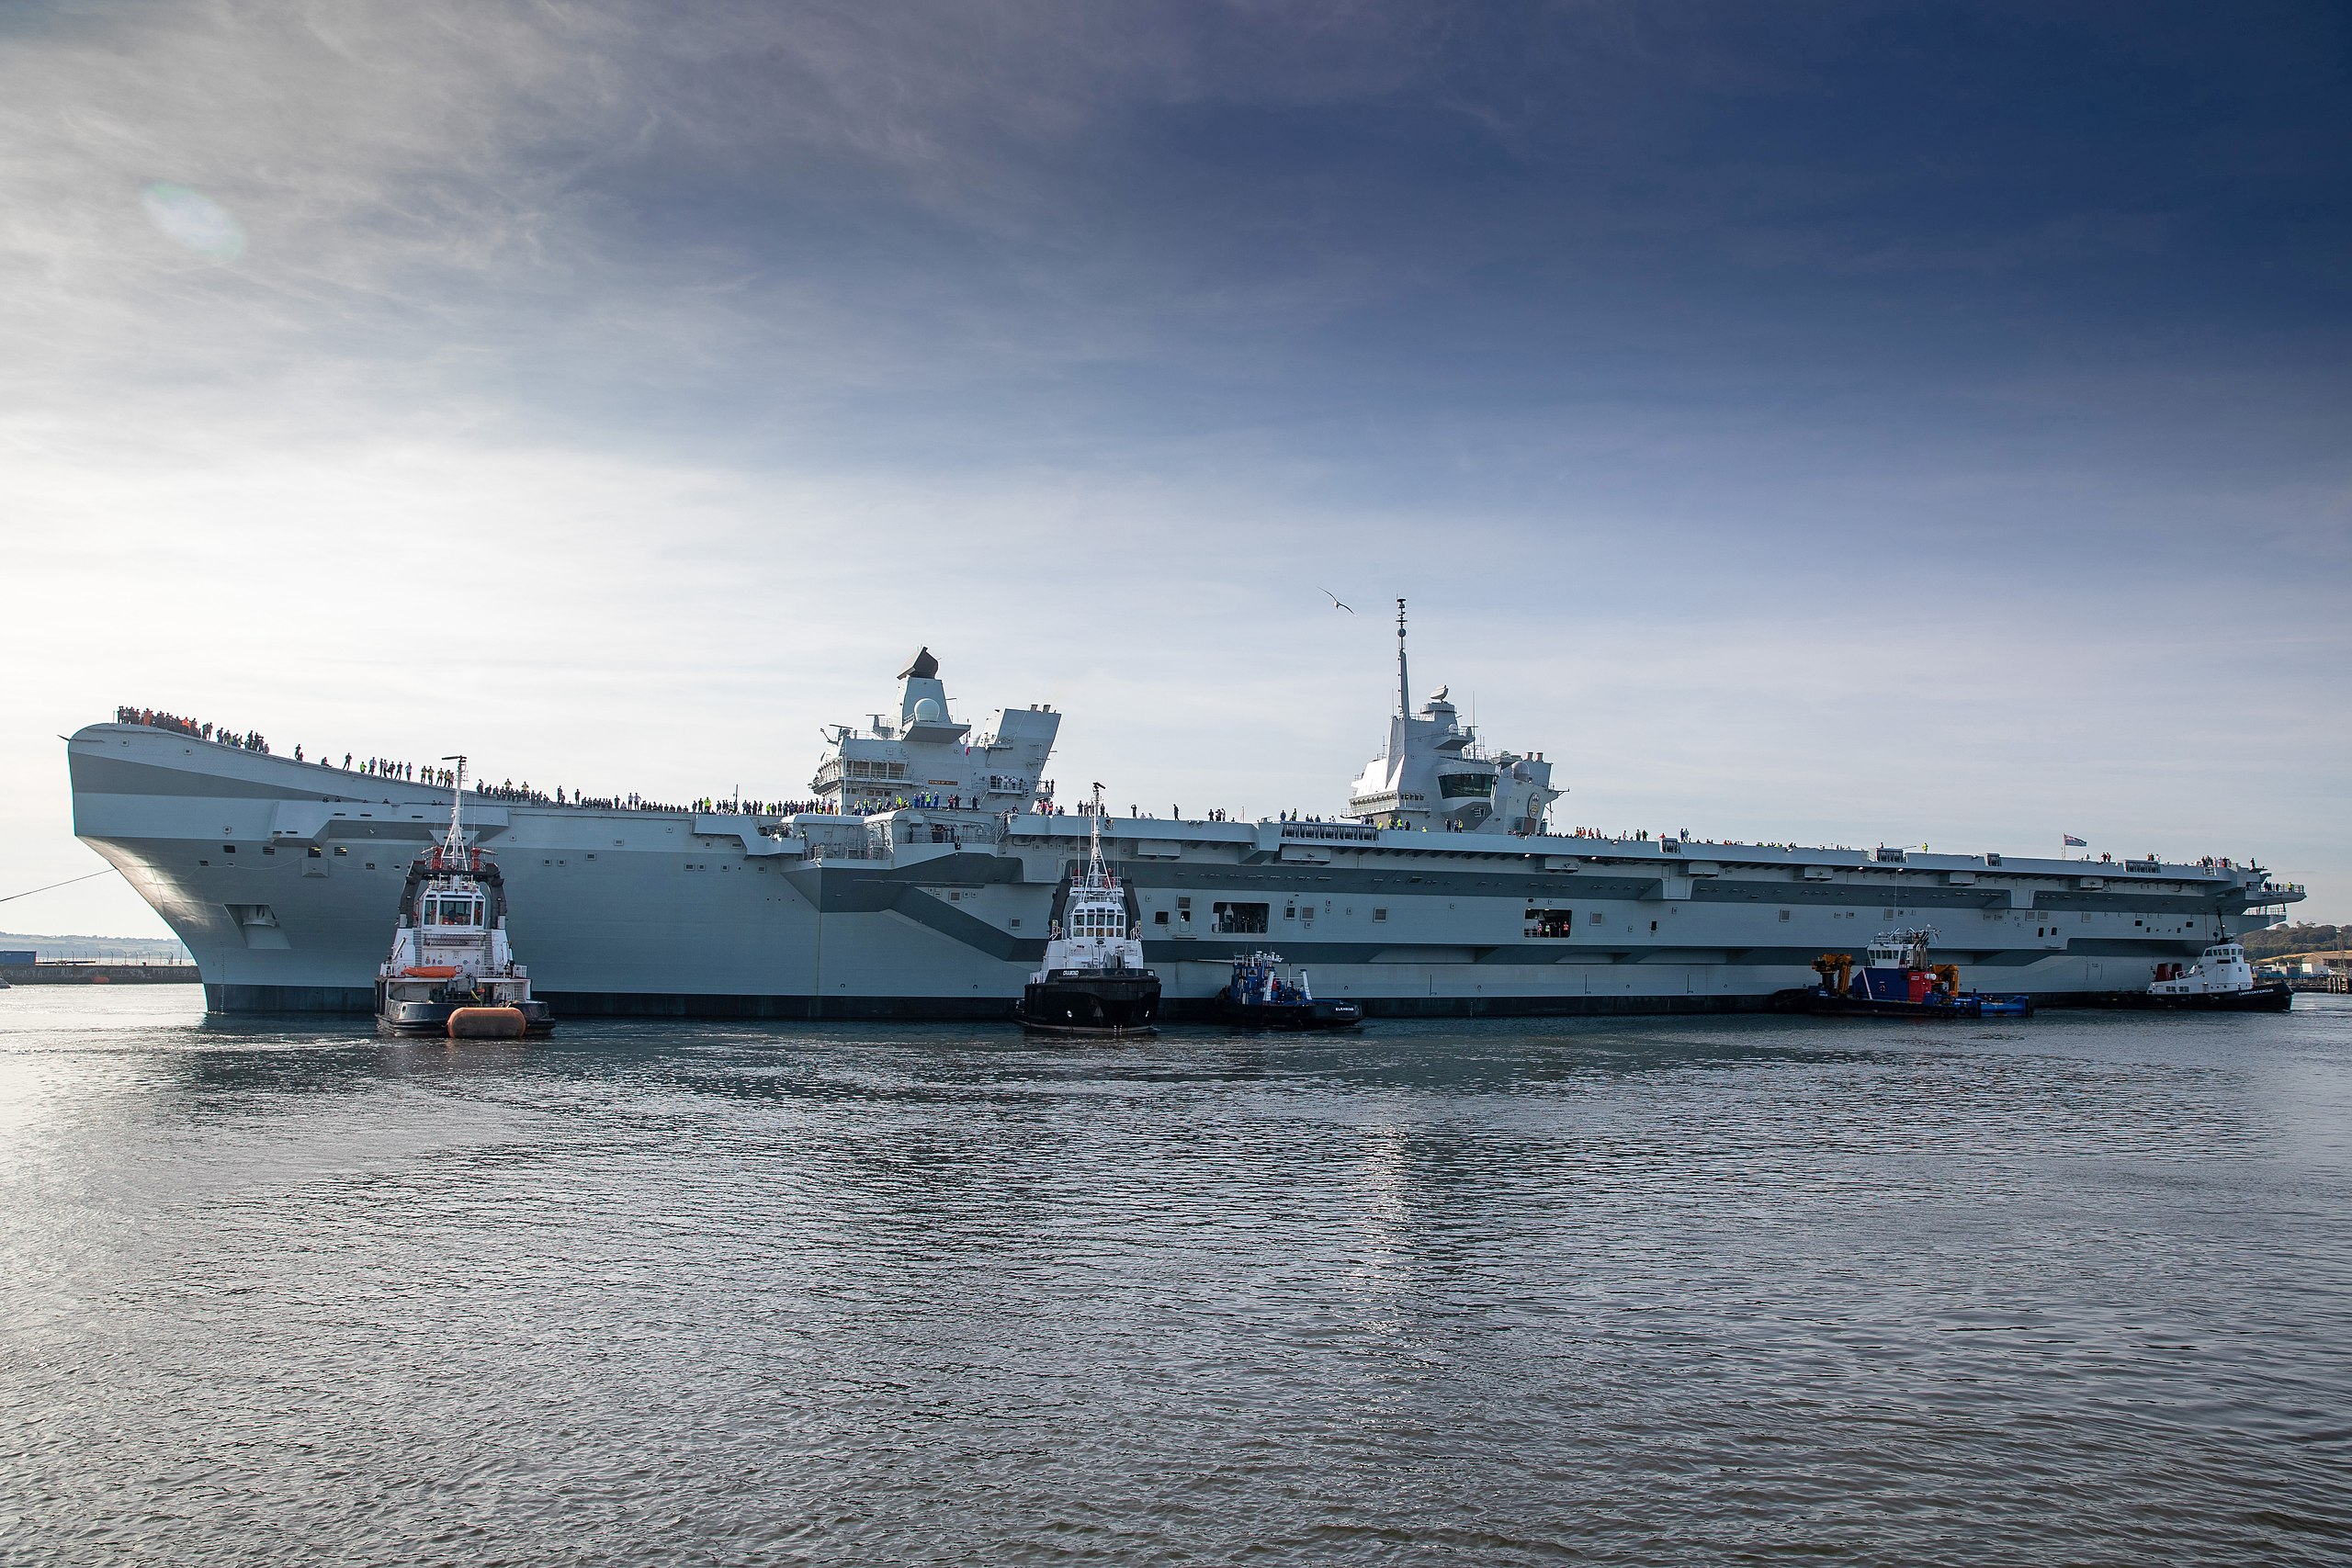 Najnowszy brytyjski lotniskowiec o wartości 3 miliardów funtów HMS Prince of Wales ulega awarii kilka godzin po wypłynięciu z Portsmouth